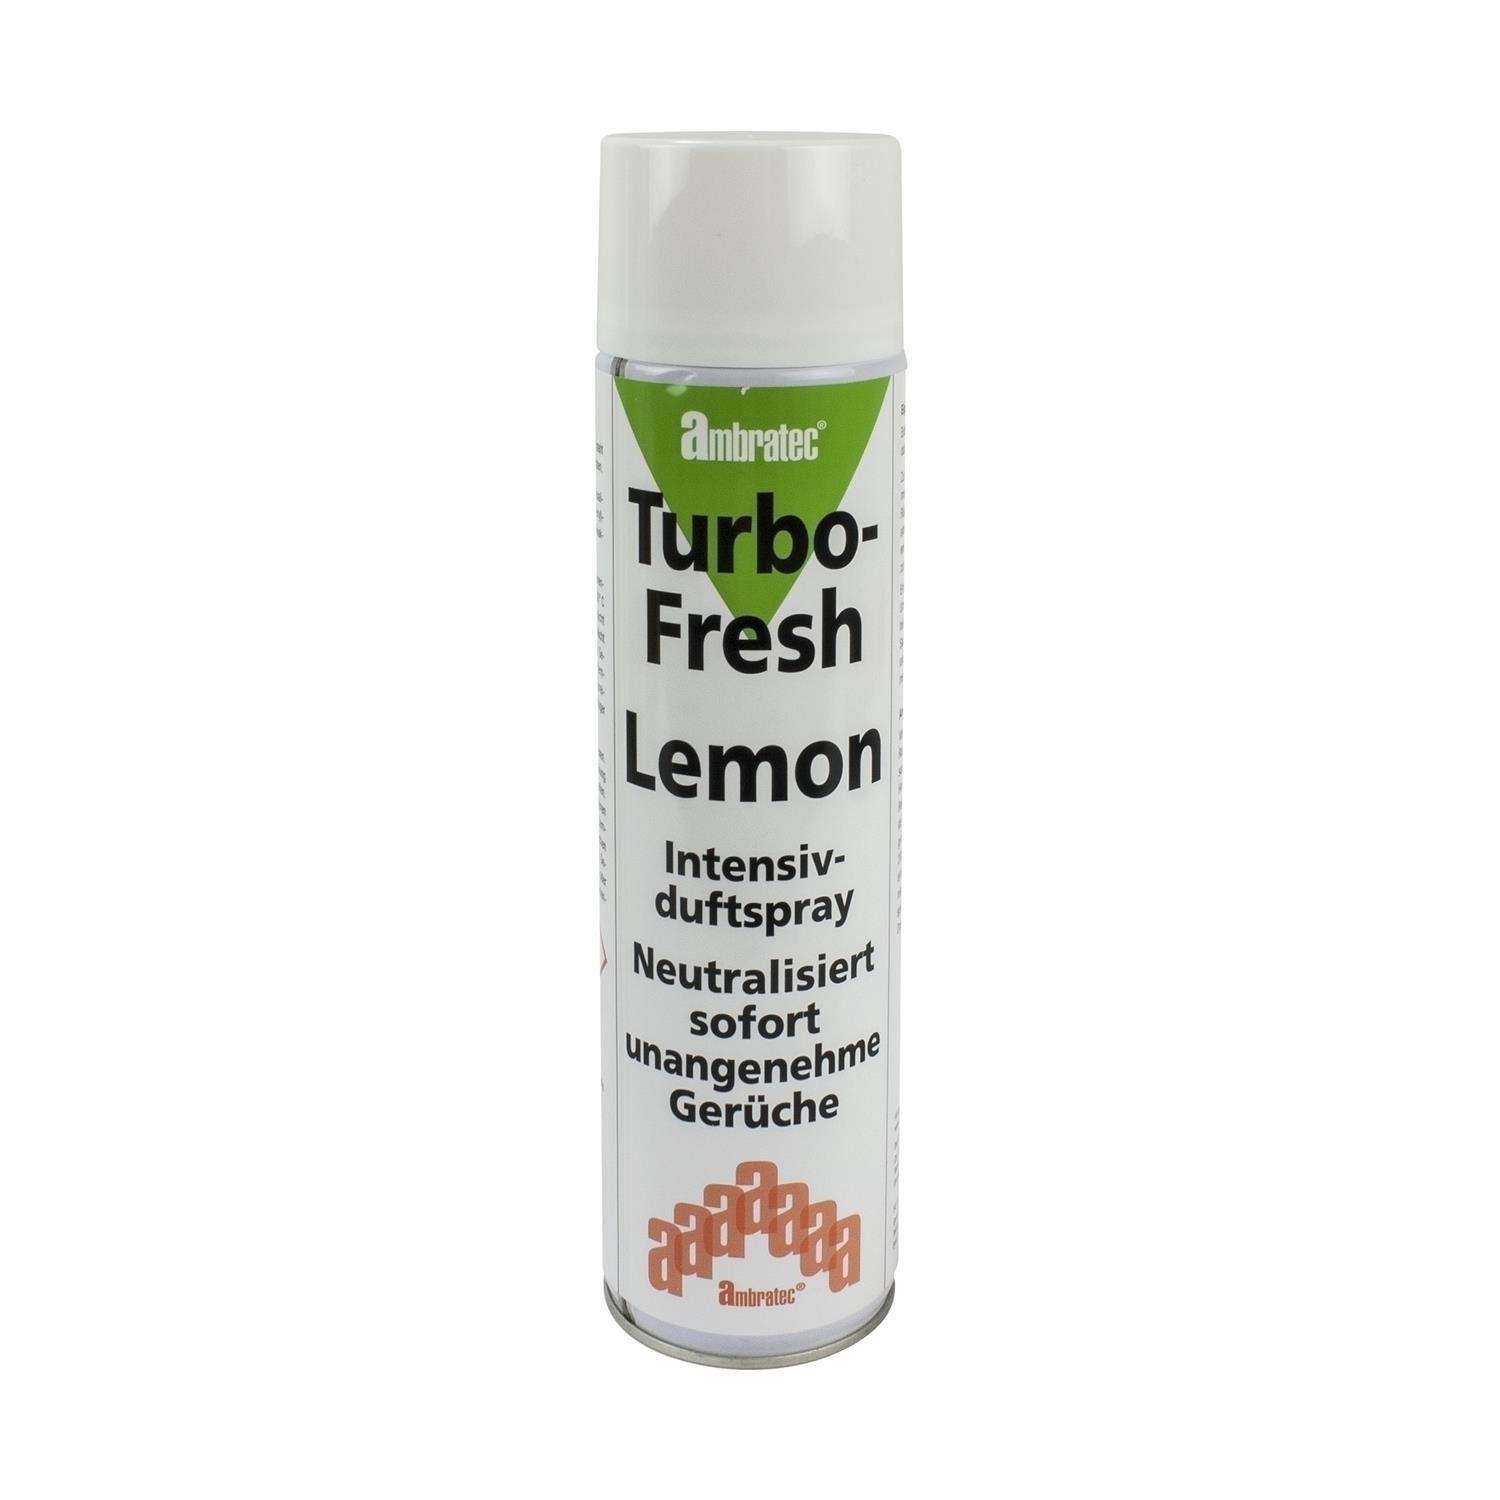 Ambratec Turbo-Fresh Lemon